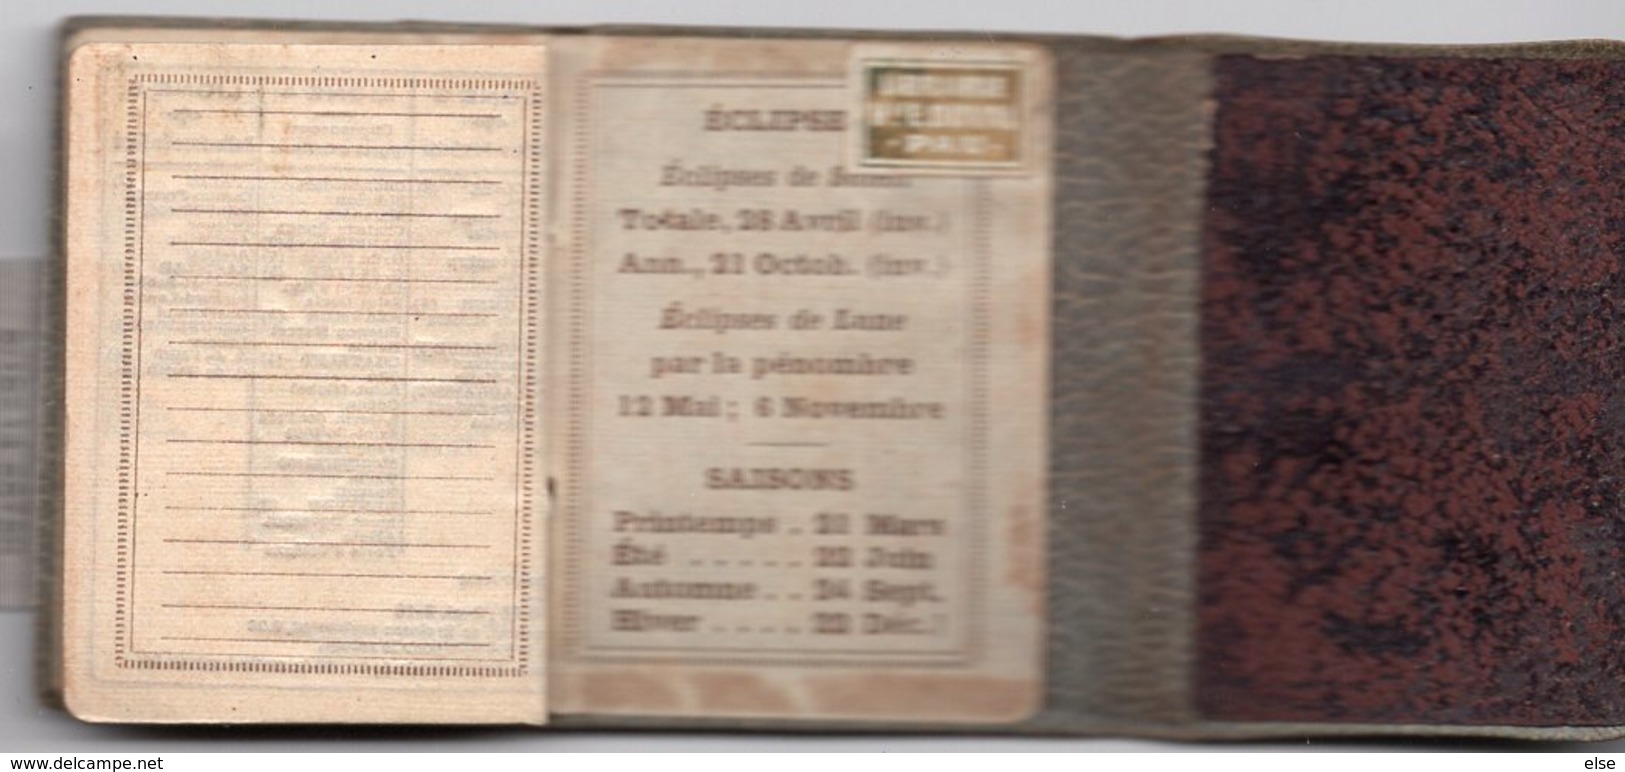 PETIT ALMANACH 1911 CALENDRIER AVEC NOTES 3 VOLETS     PUBLICITAIRE LIBRAIRIE Vve DUVAL  PAU - Small : 1901-20